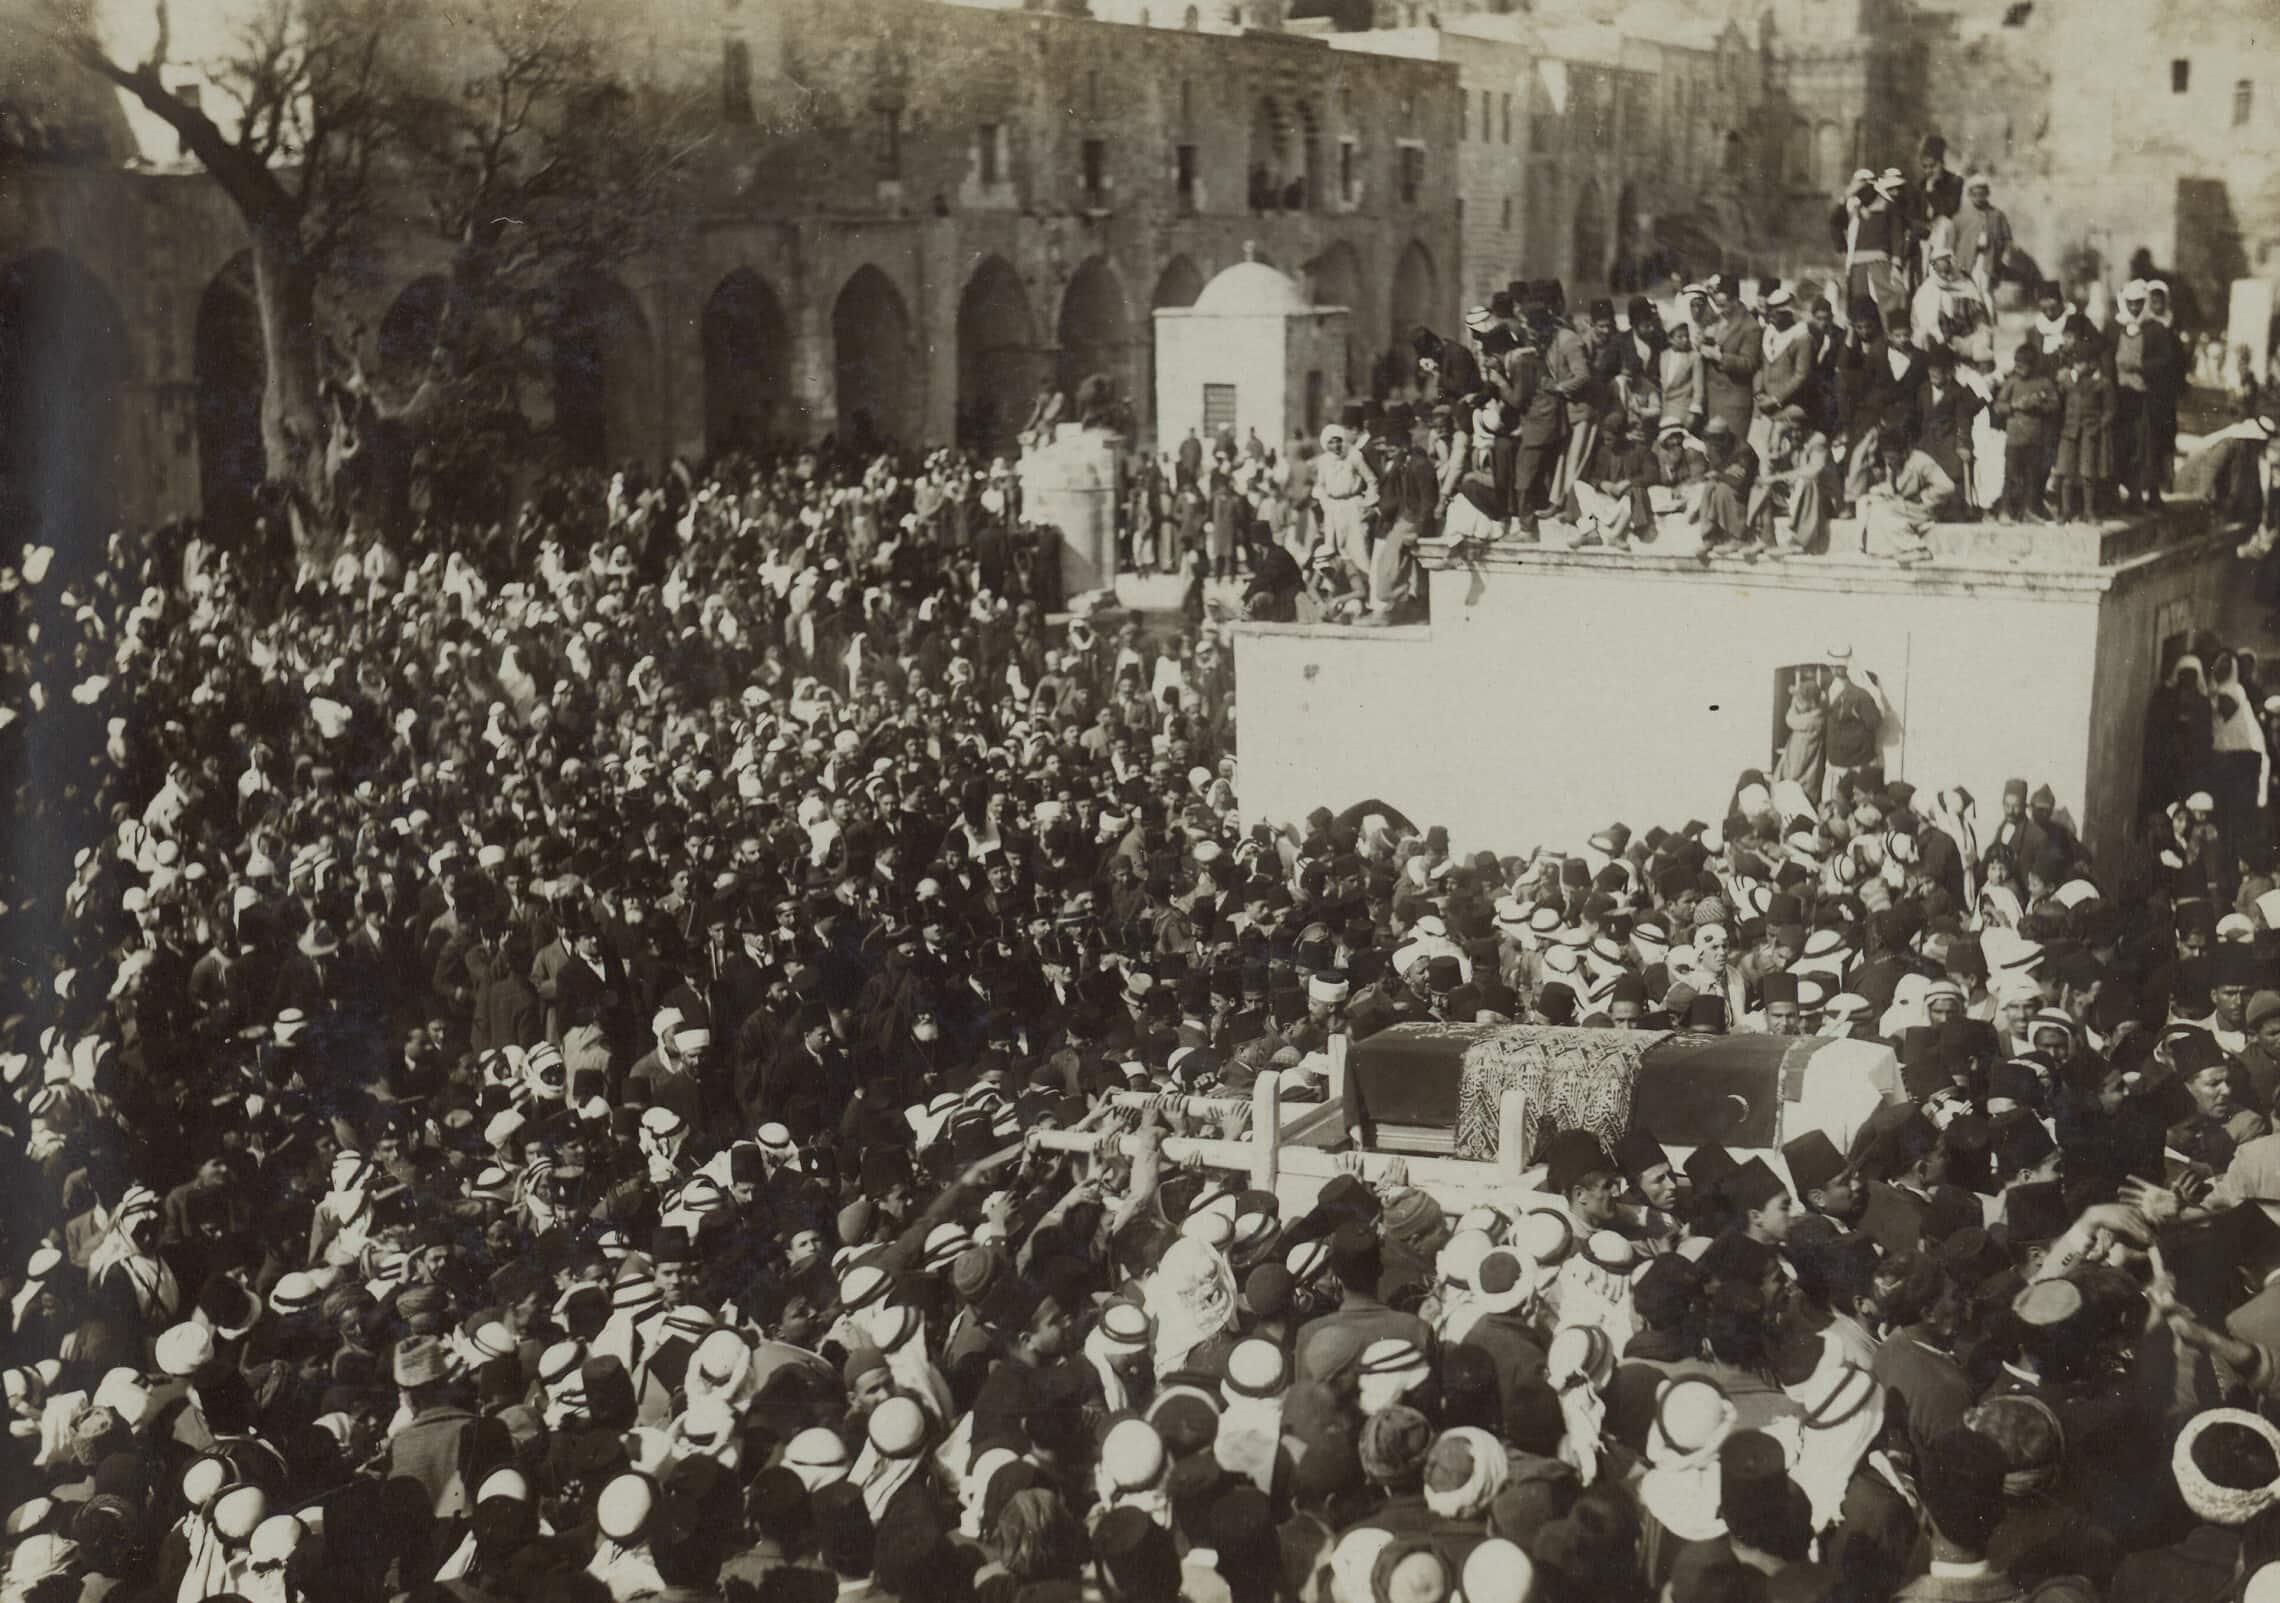 הלווייתו של כאמל אל־חוסייני בהר הבית (צילום: מתוך אוסף התצלומים, הספרייה הלאומית)